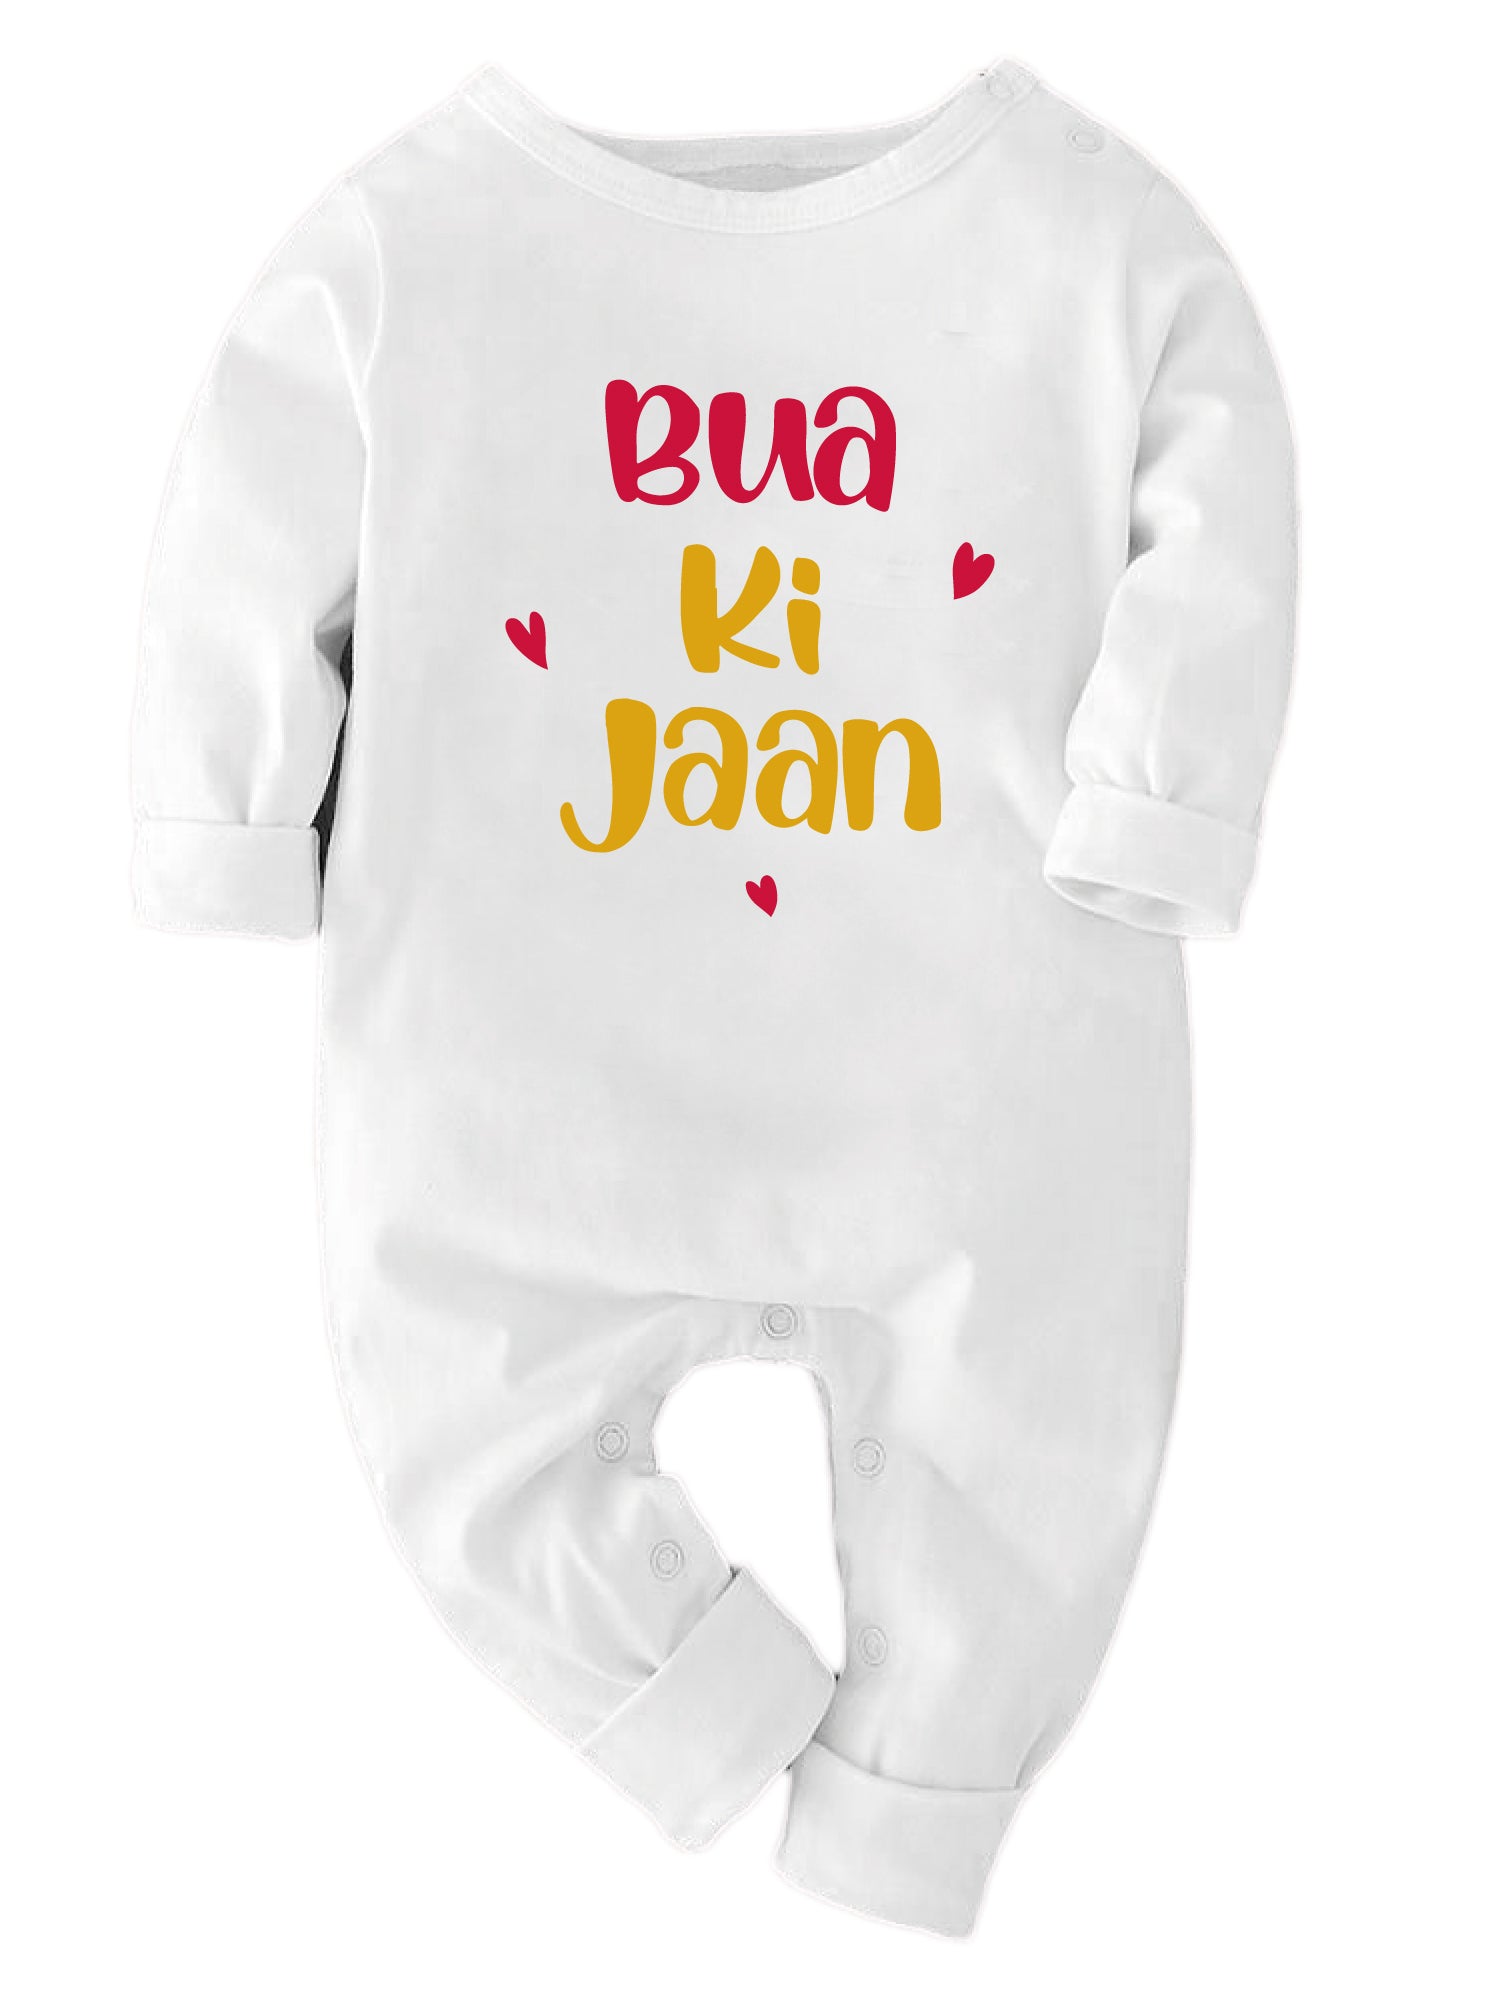 Bua Ki Jaan - Bodysuit